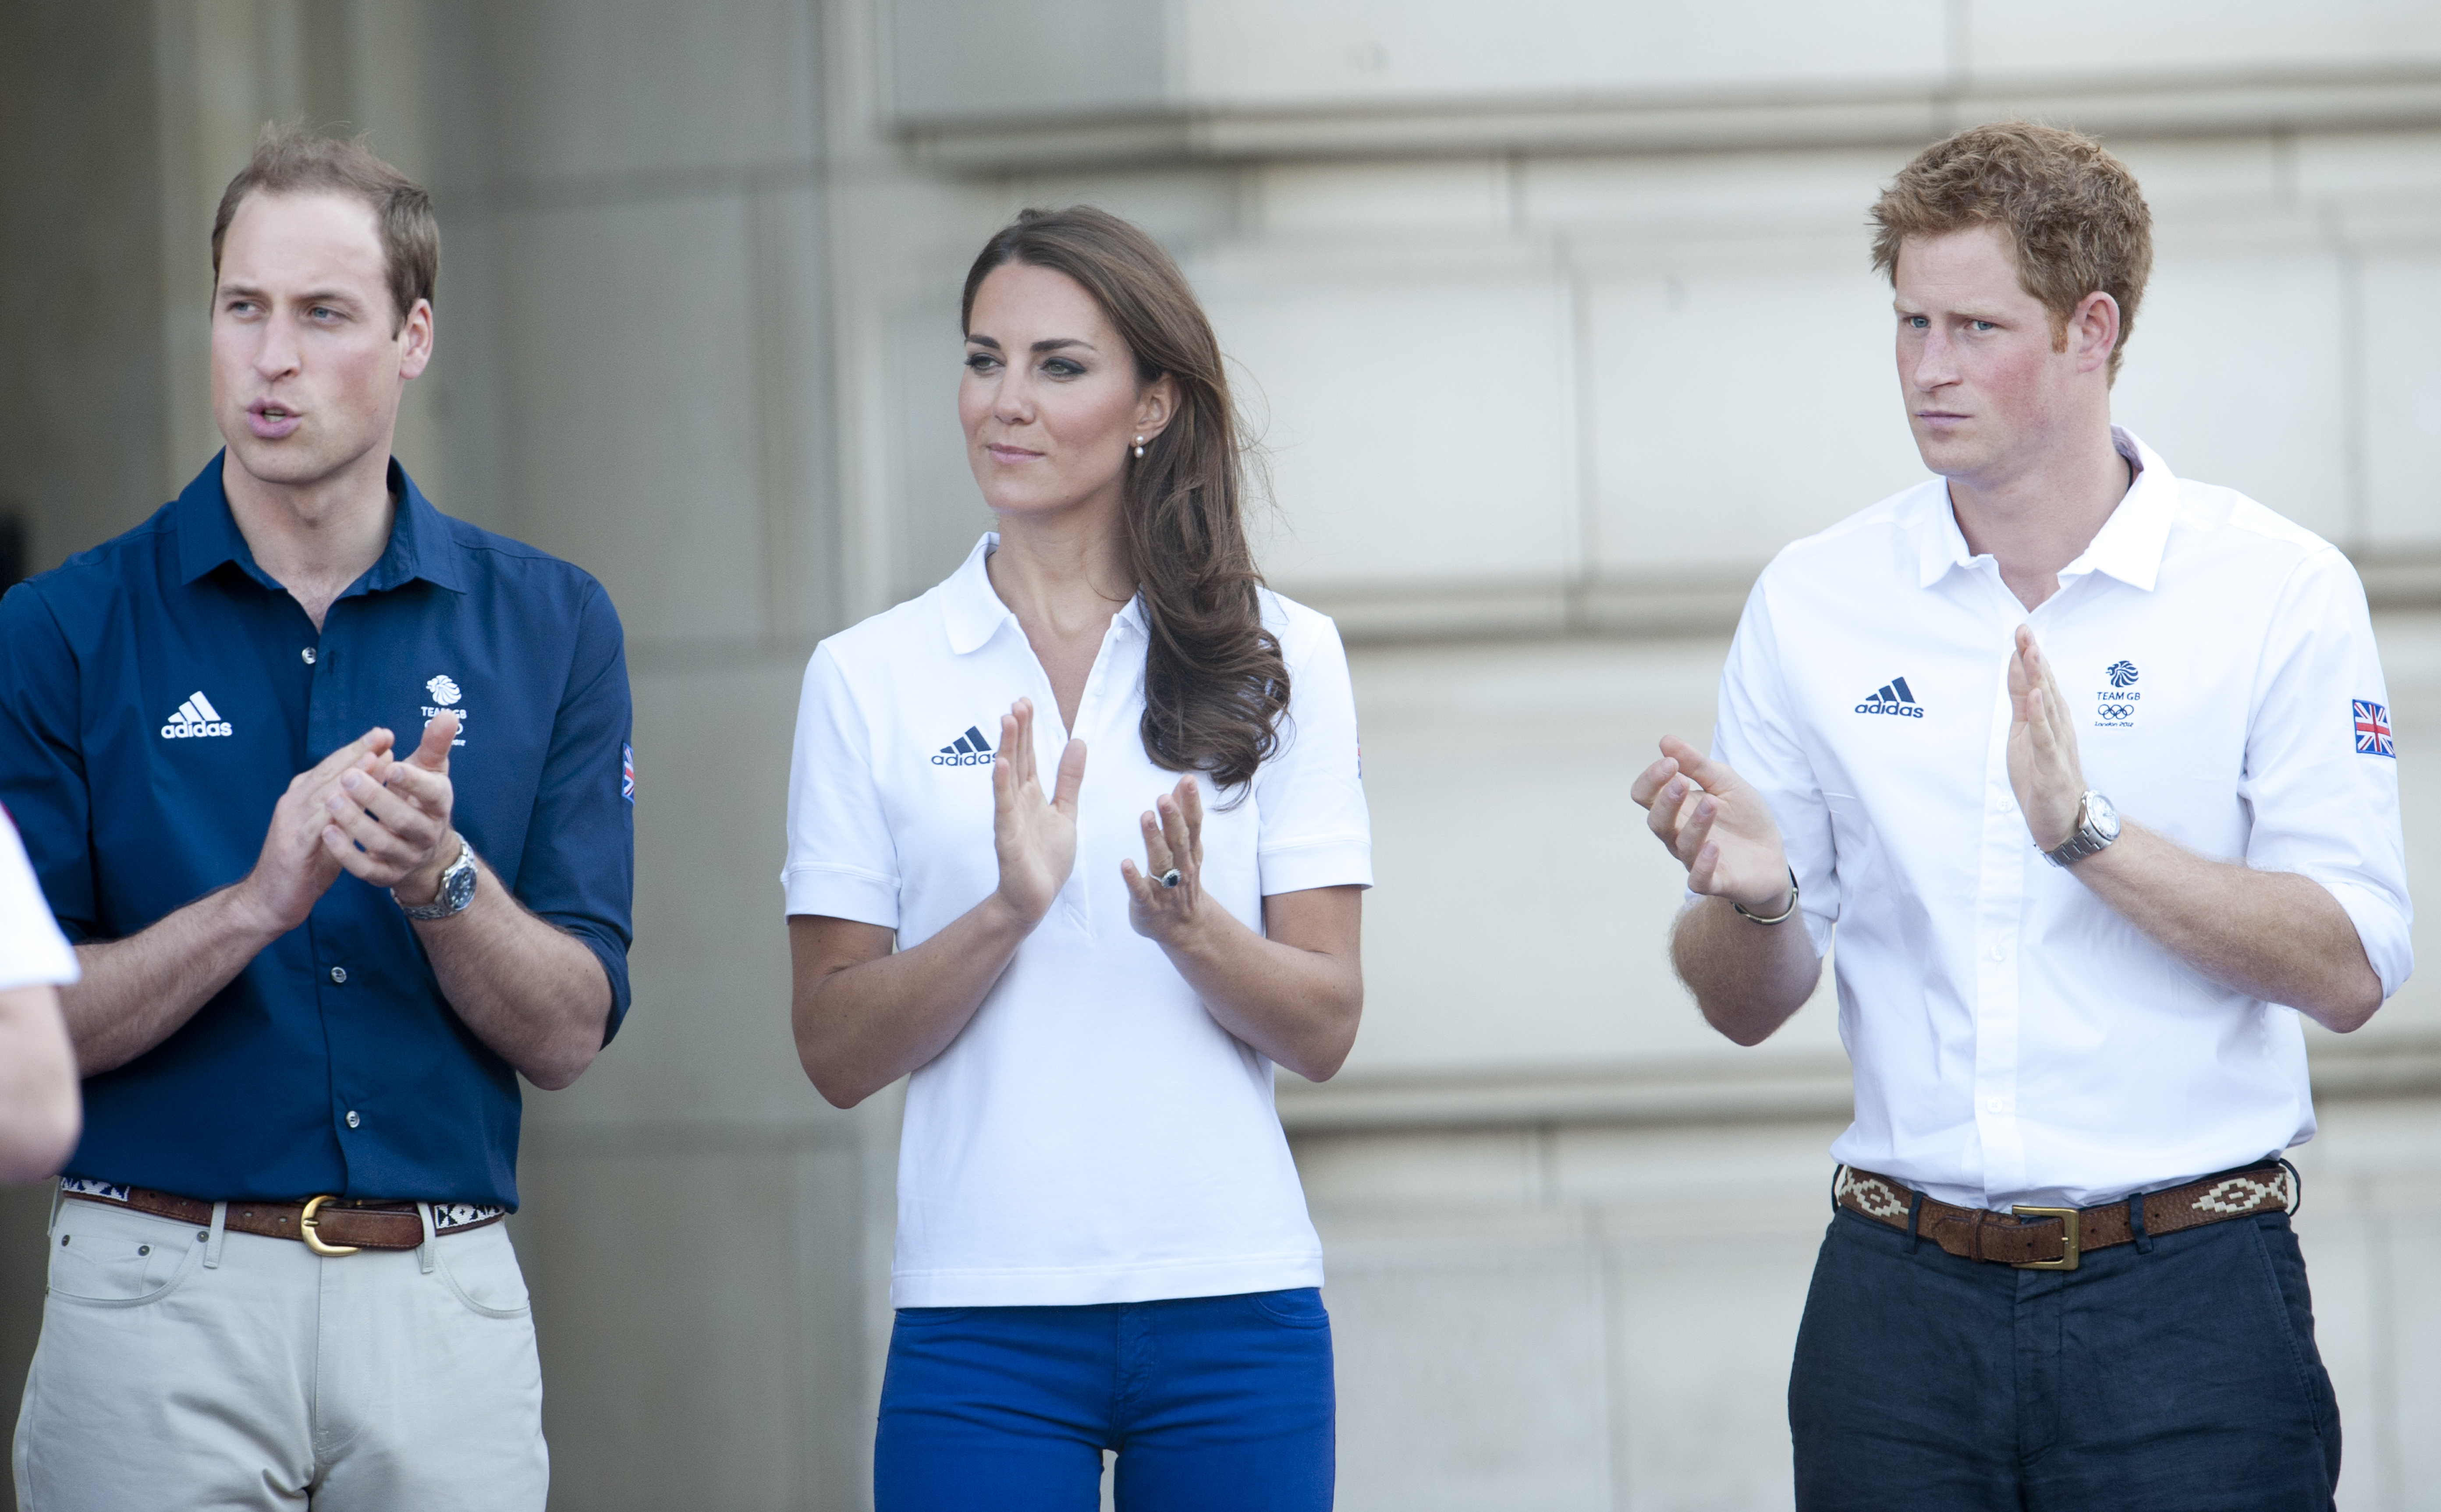 Le prince William, la princesse Catherine et le prince Harry au relais de la flamme olympique de Londres 2012 | Source : Getty Images